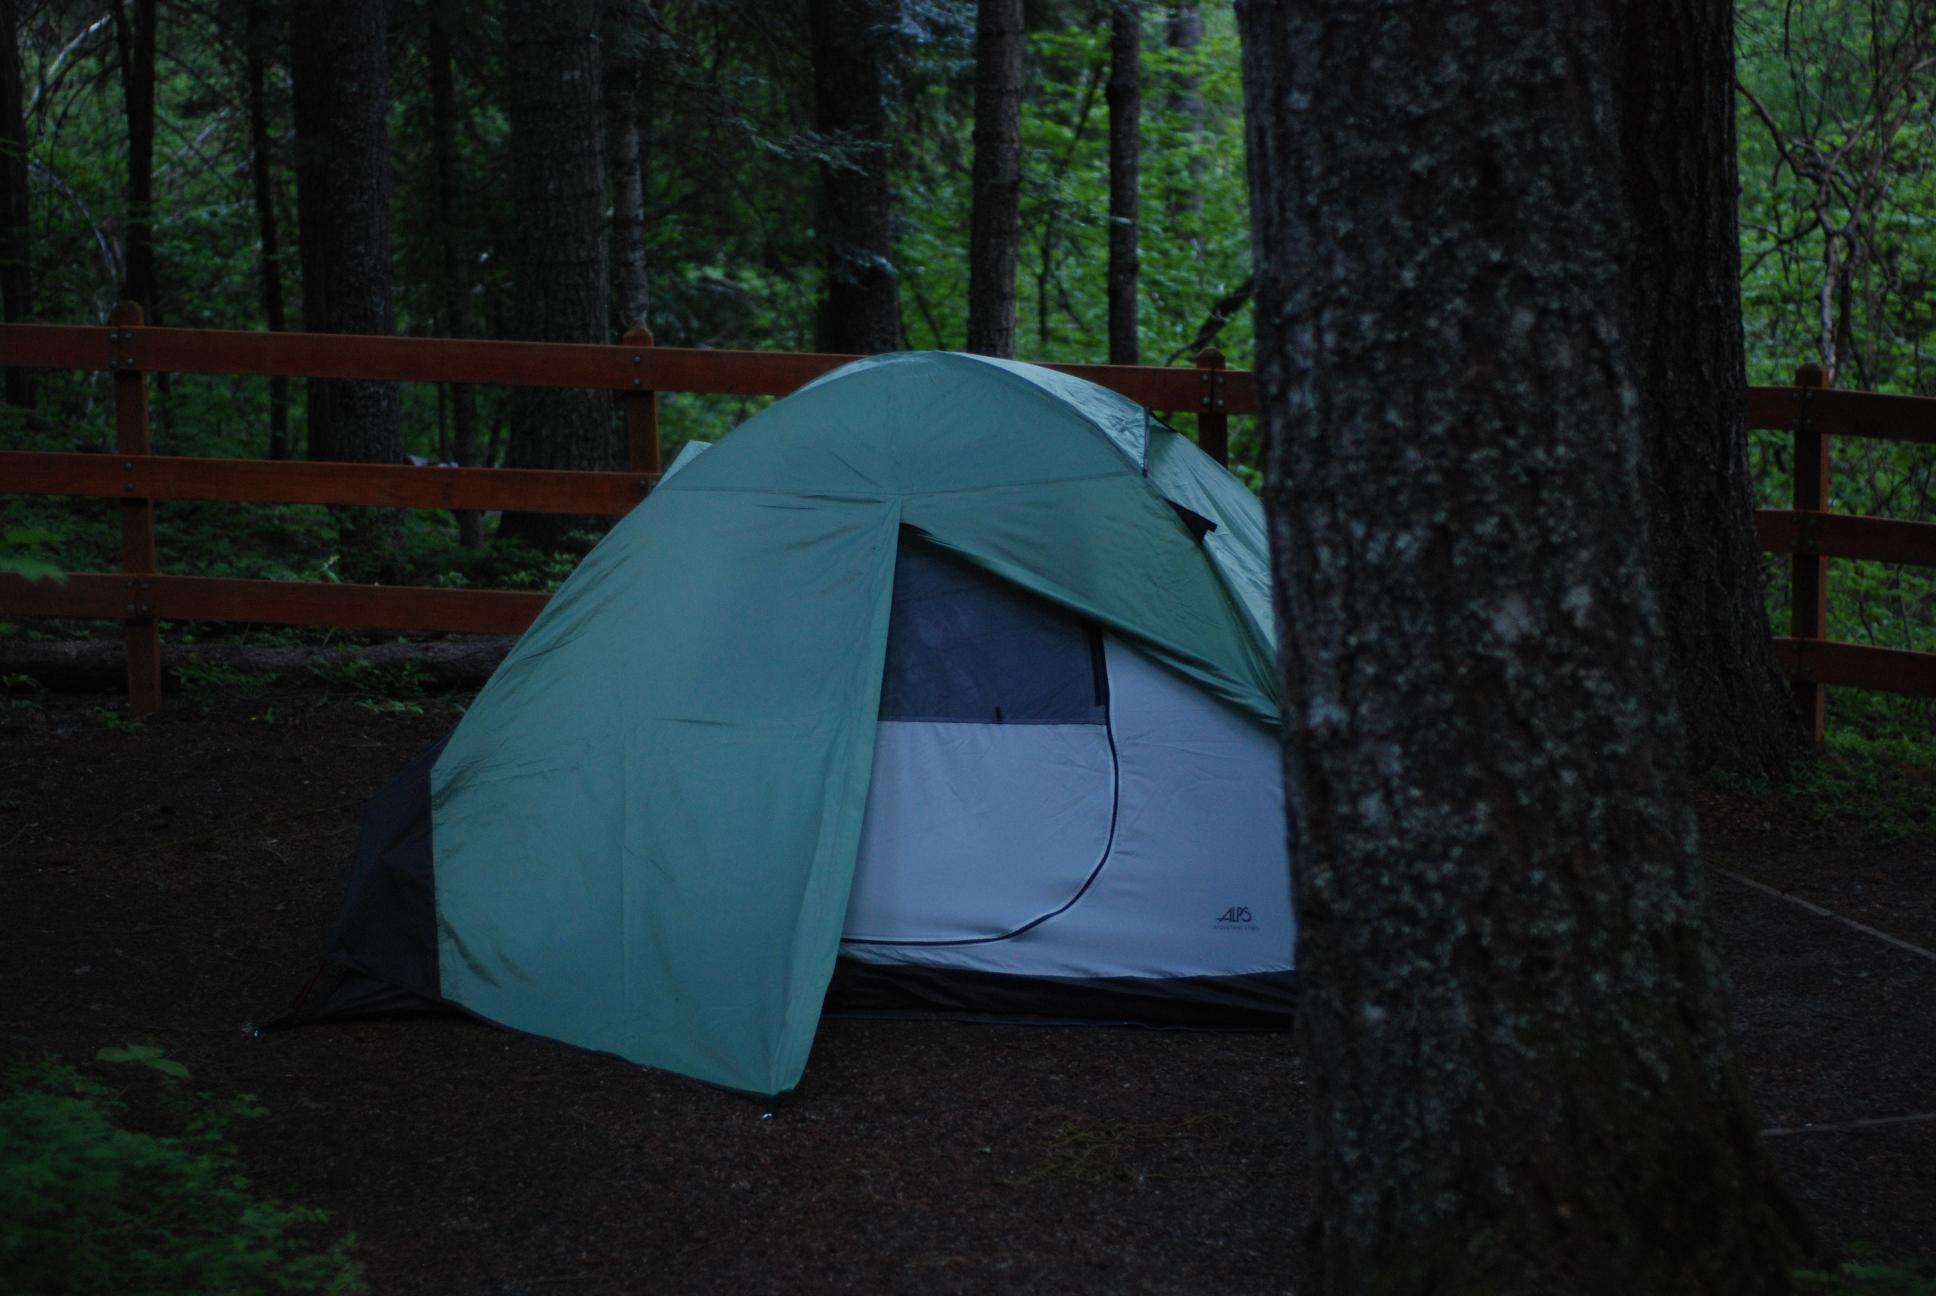 Tent || NIKON D80/50mm f/1.8@50 | 1/25s | f1.8 | ISO400 || 2008-05-30 20:52:39